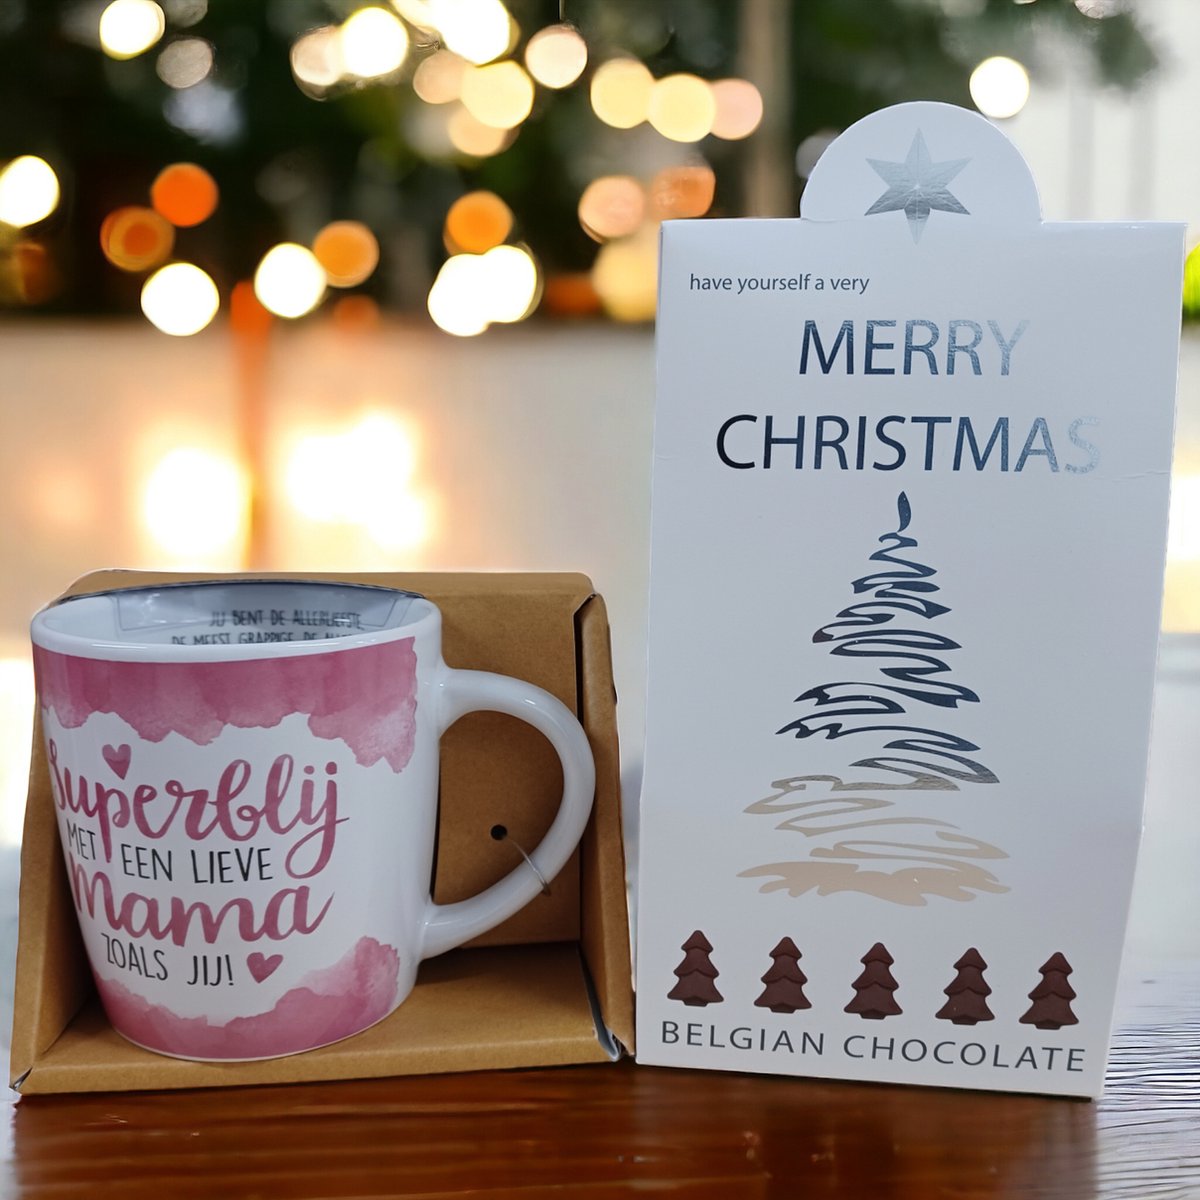 Mama-Lieve Mama-Bonus-Kerstcadeau-Kerstpakket-Giftset-December Cadeau-Merry Christmas-Happy New Year-Belgische Chocolade-Champagne Flesjes-Kerst Chocolade-Zoetigheid-Mok-Beker-Magische dagen-Familiediner-Kerstdiner-Kerstfeest-Oudejaar